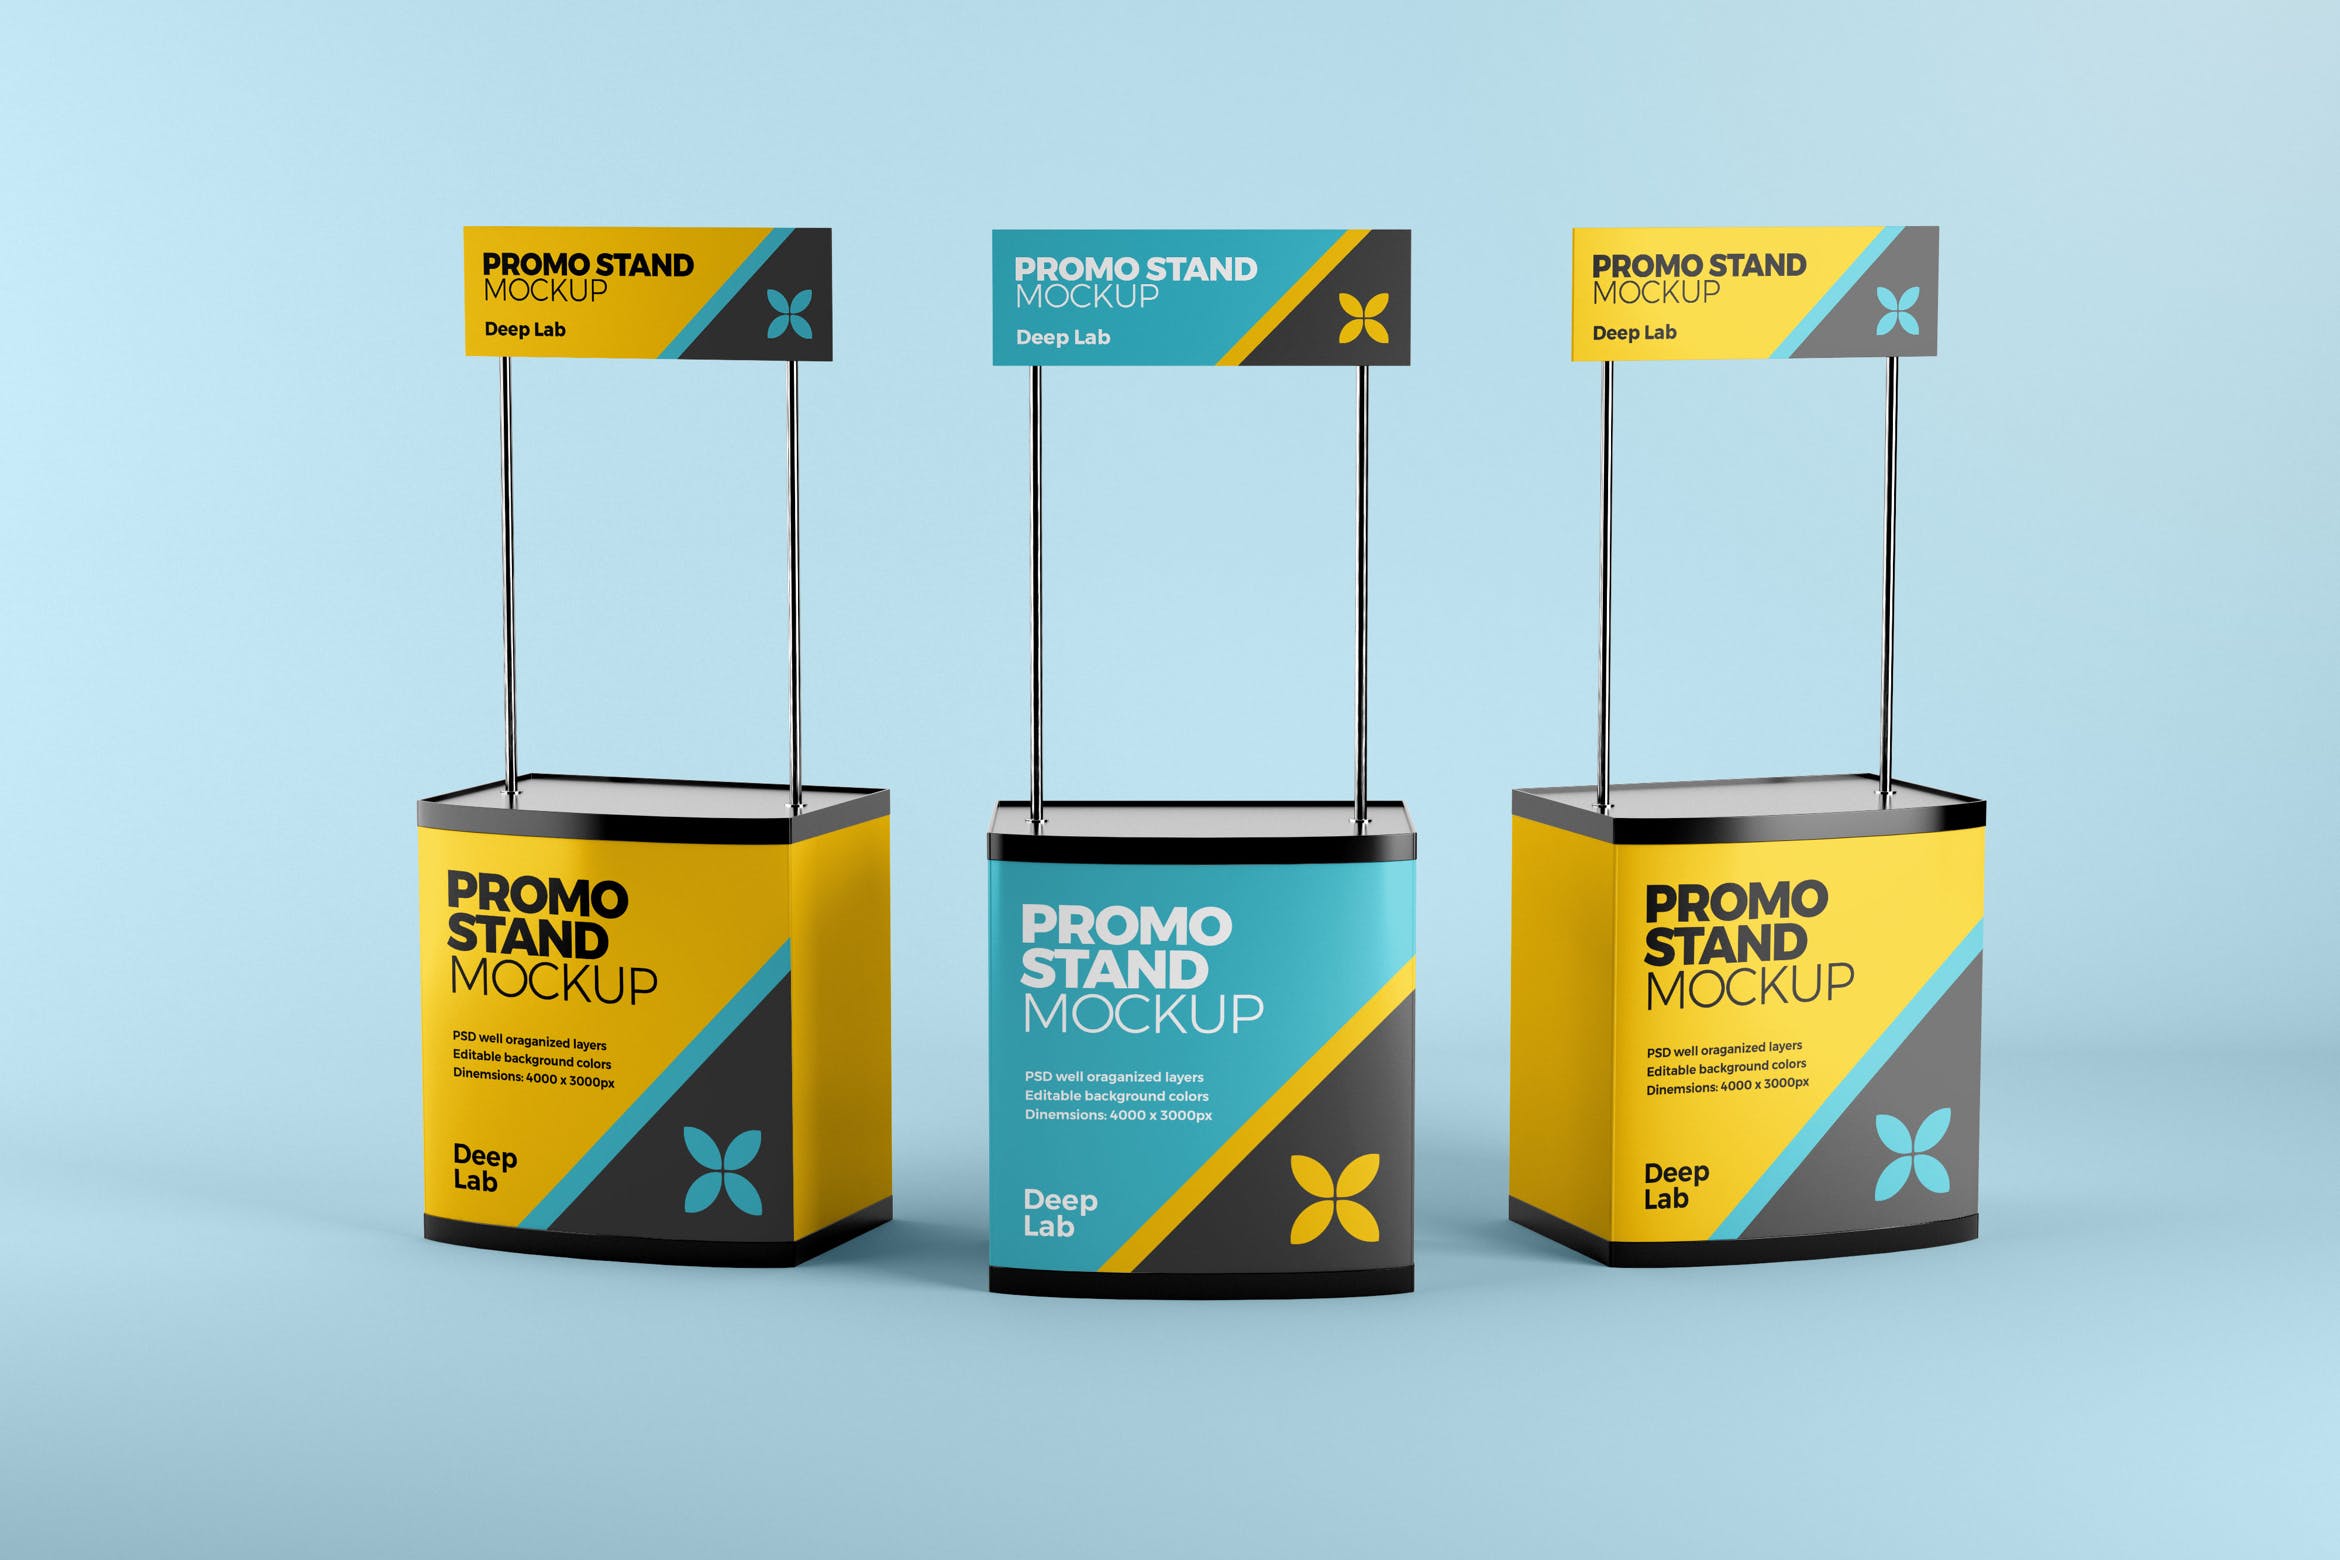 促销台&促销桌广告设计效果图样机 Promo stand mockup设计素材模板